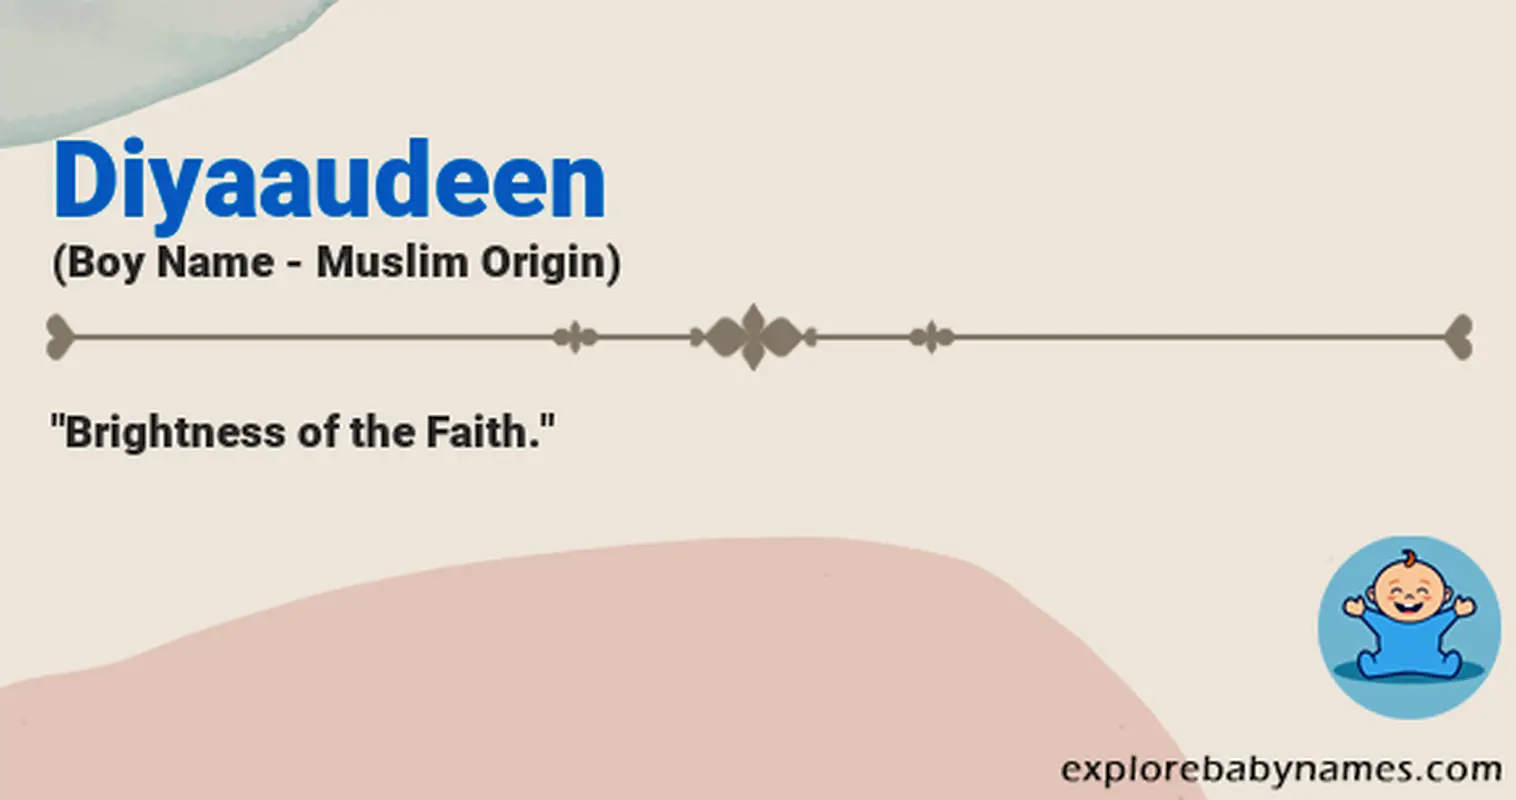 Meaning of Diyaaudeen